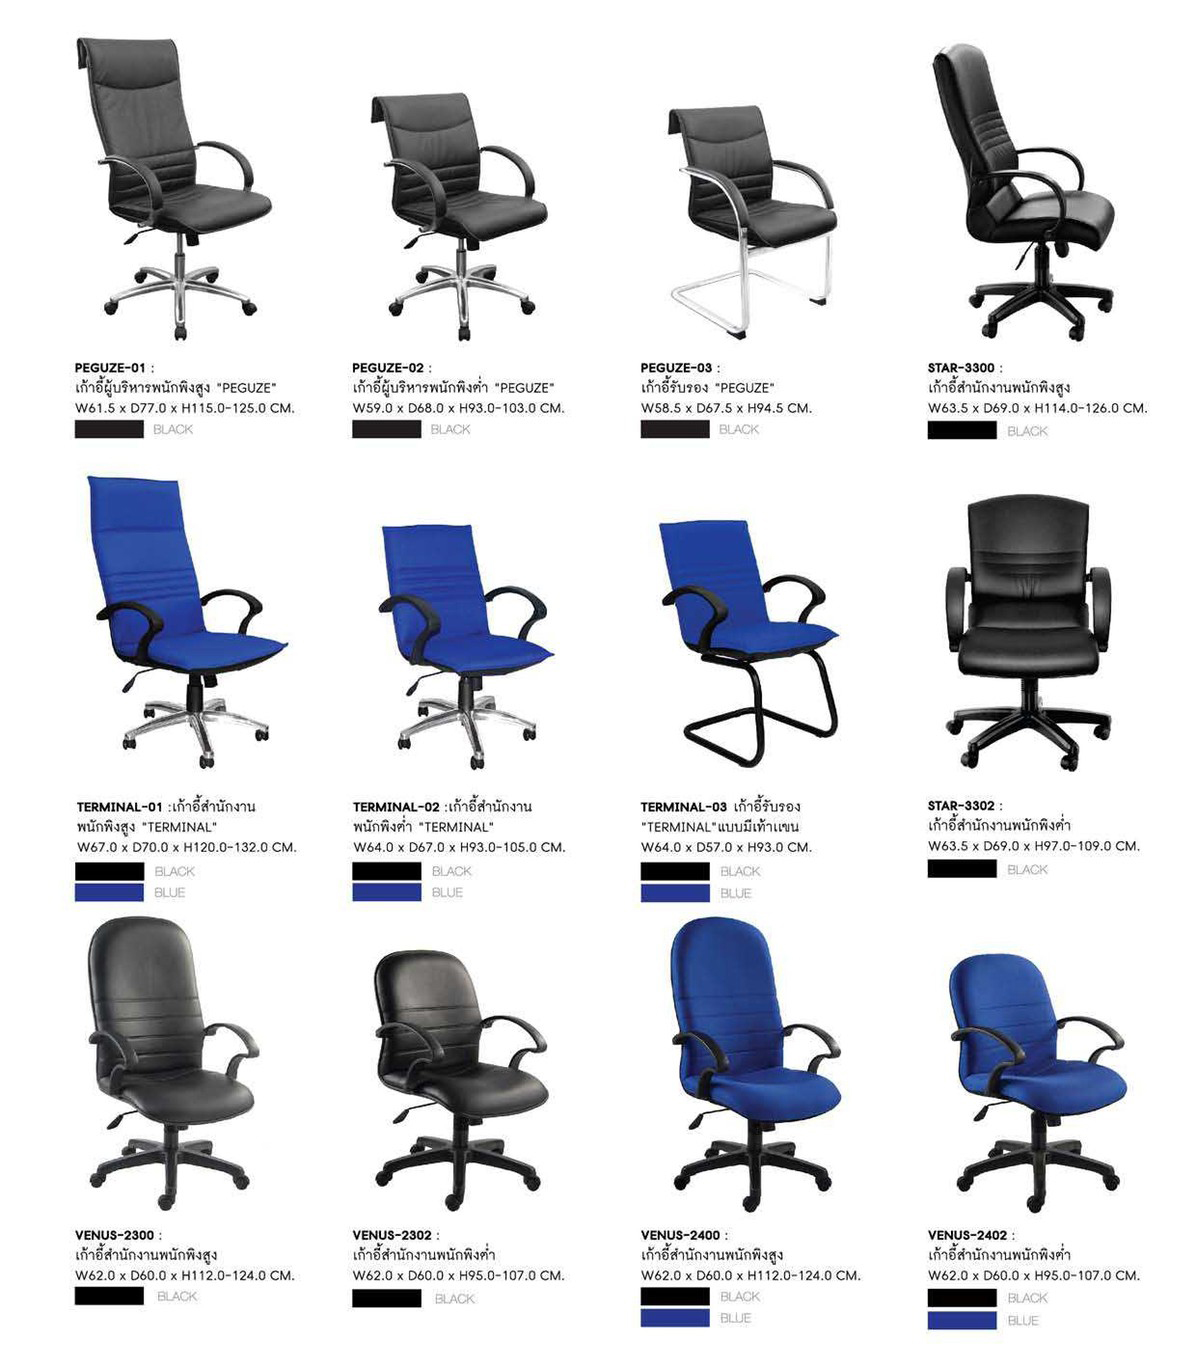 30008::TERMINAL-02::เก้าอี้ผู้บริหาร TERMINAL-02 ขนาด ก640xล670xส930-1050 มม. มี2สี (สีดำ,สีน้ำเงิน)  เก้าอี้สำนักงาน SURE